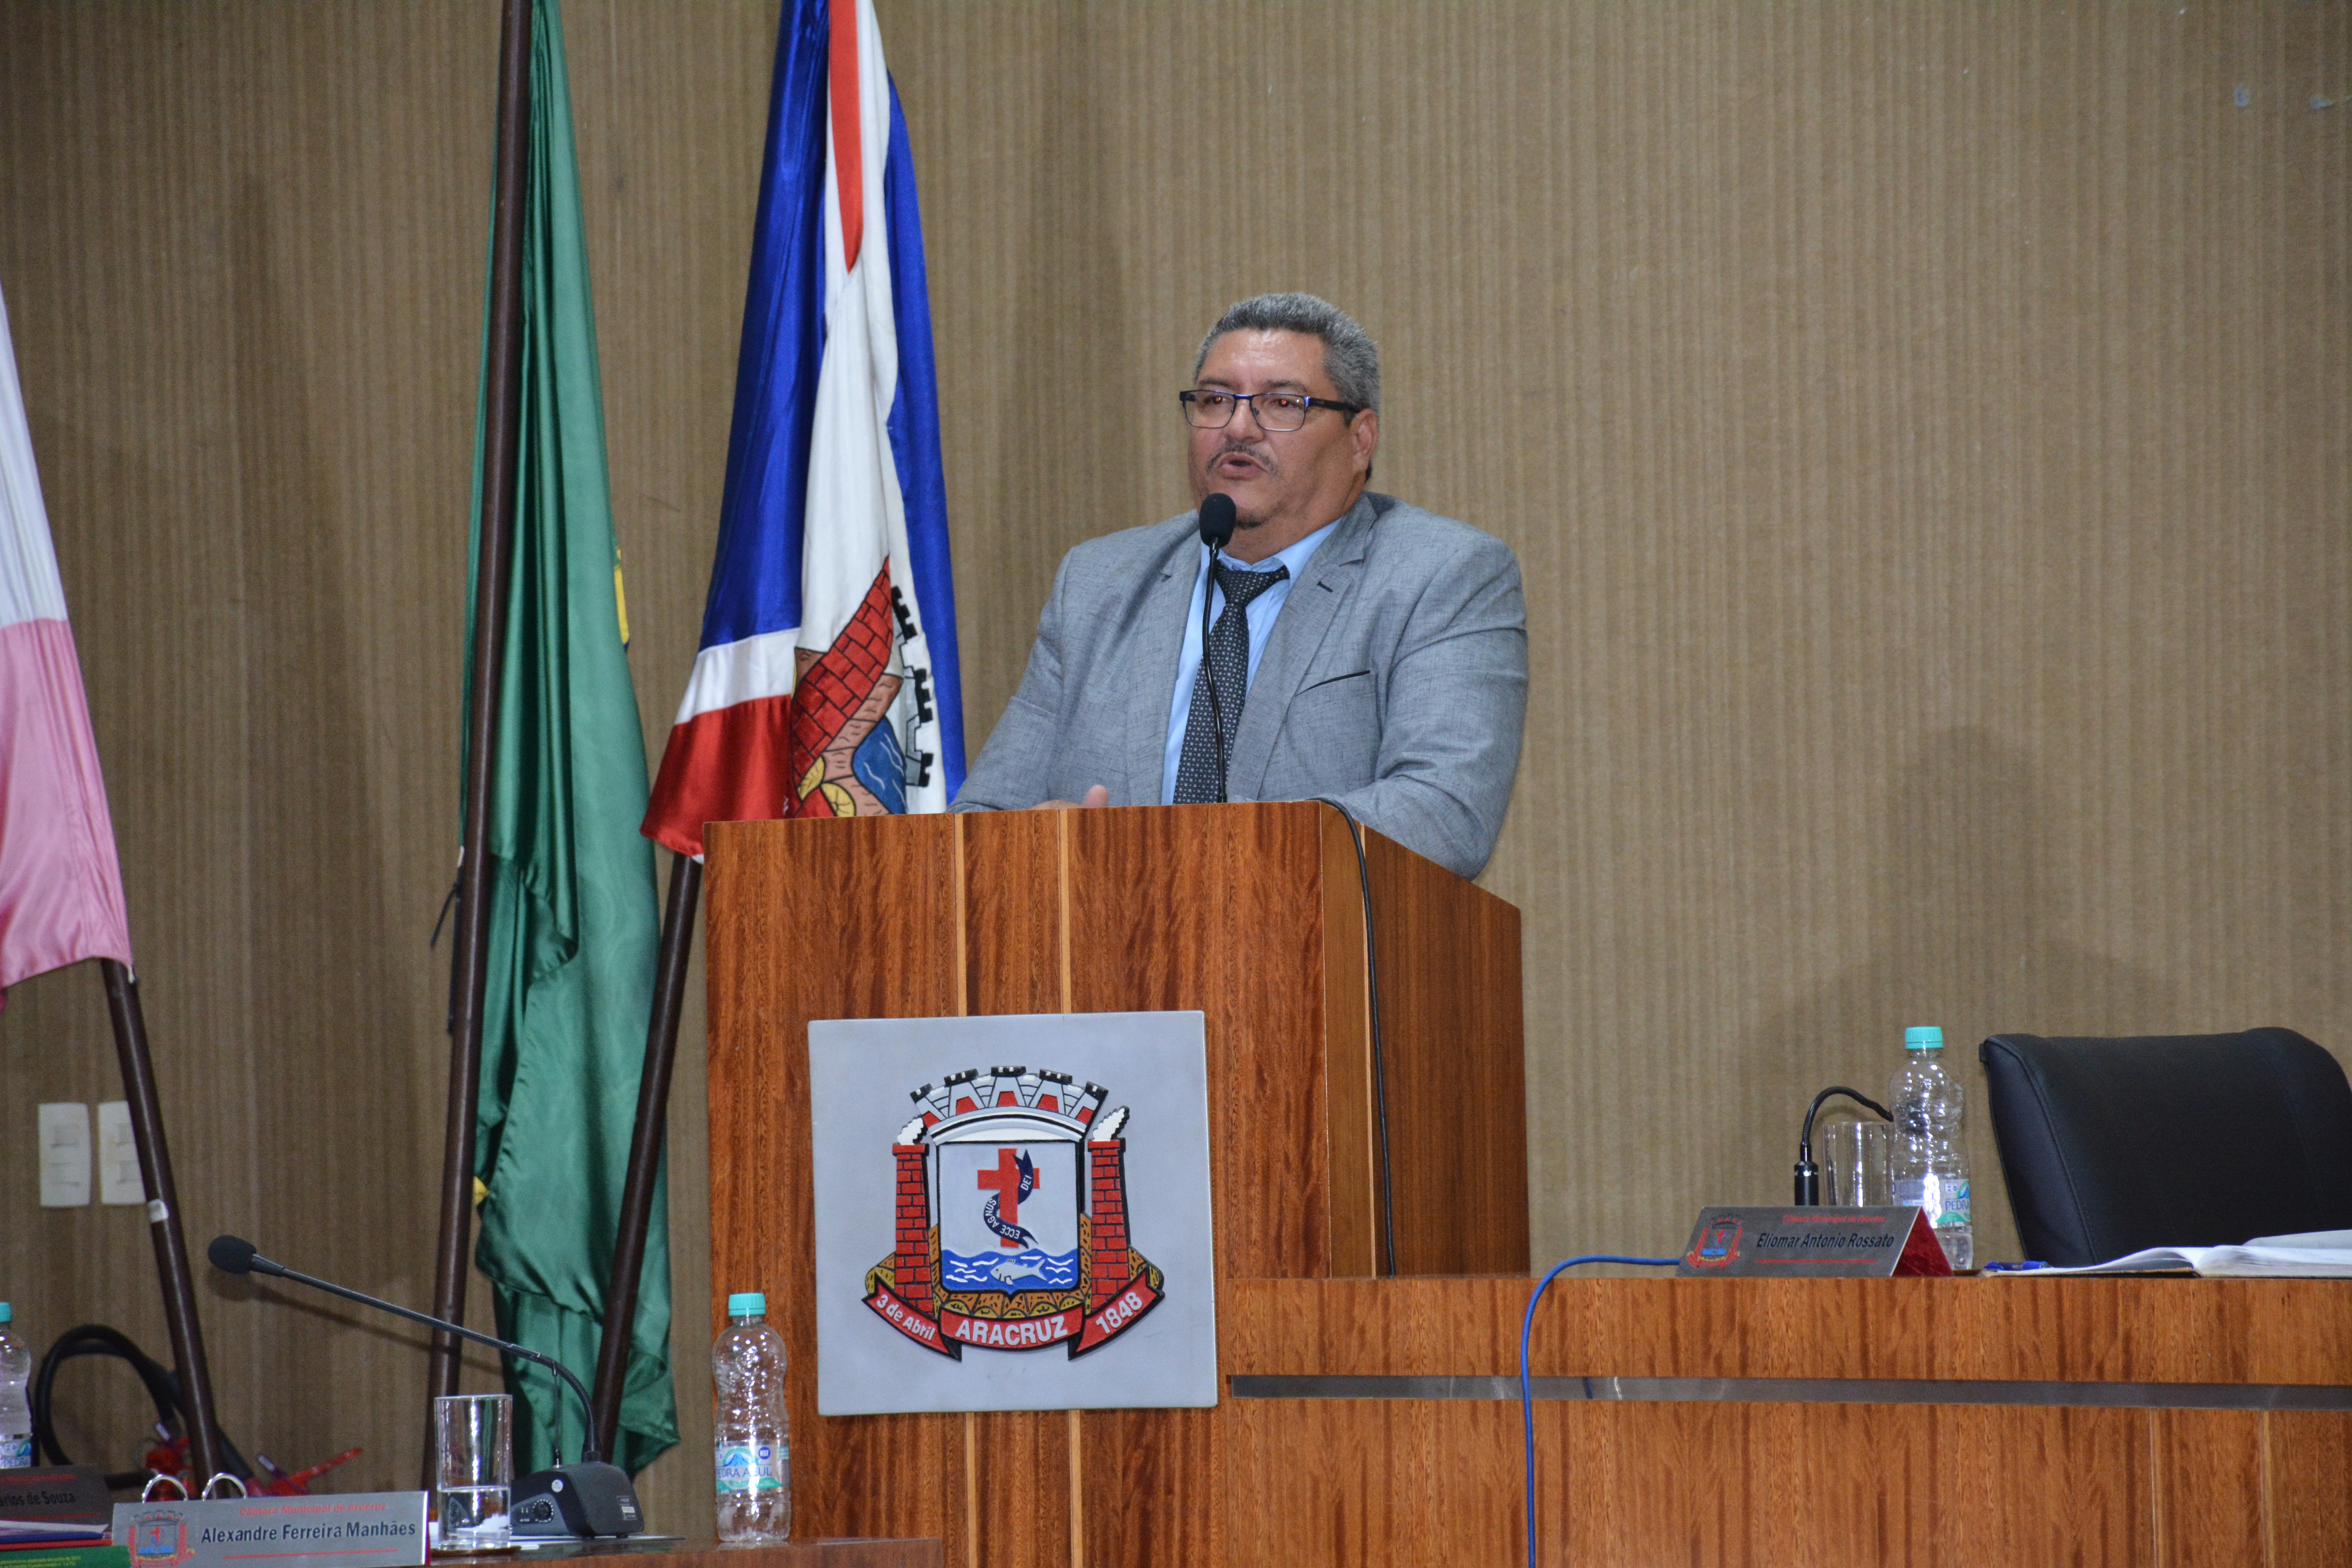 90º SESSÃO ORDINÁRIA-  Audiência Pública é anunciada na 90ª sessão ordinária realizada na Câmara Municipal de Aracruz